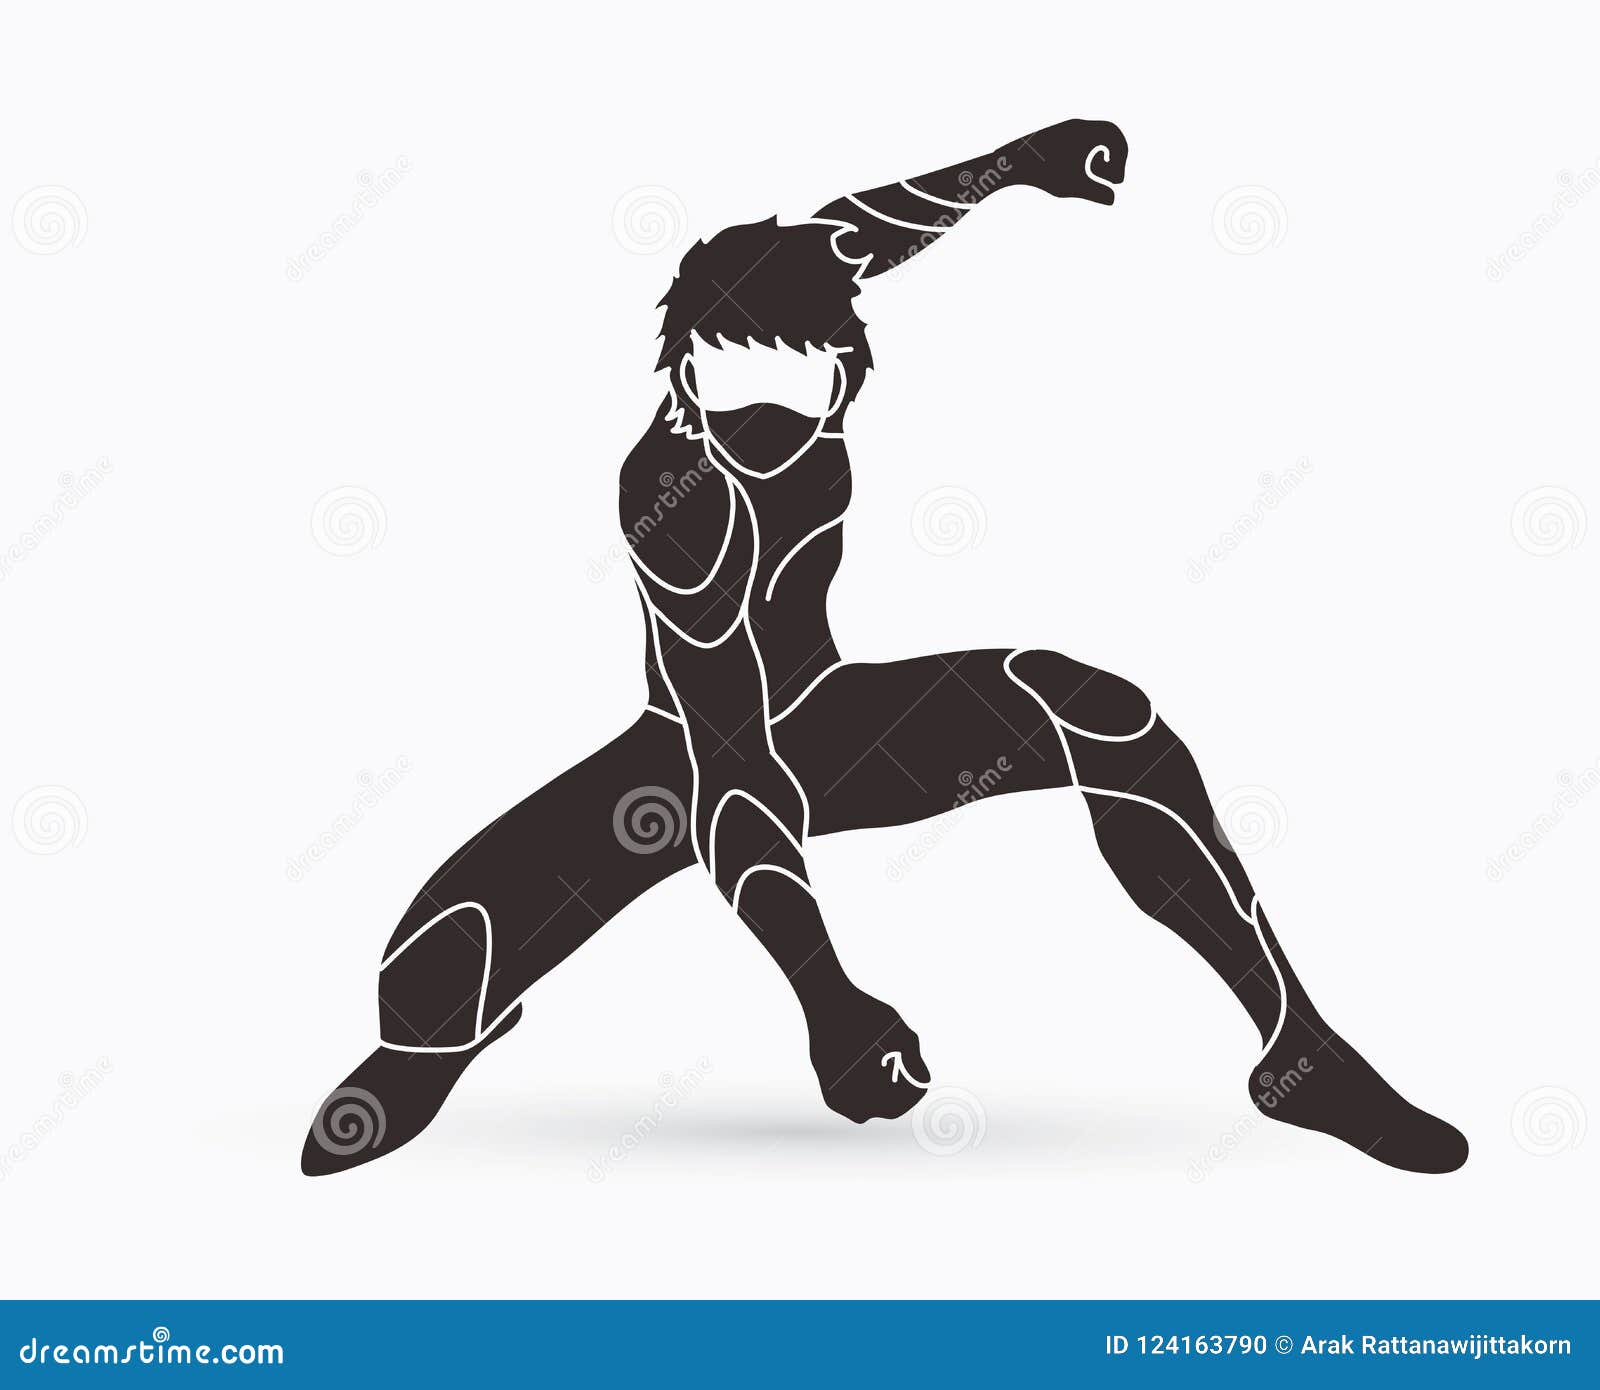 Superhero landing (iron man pose) : r/transformers